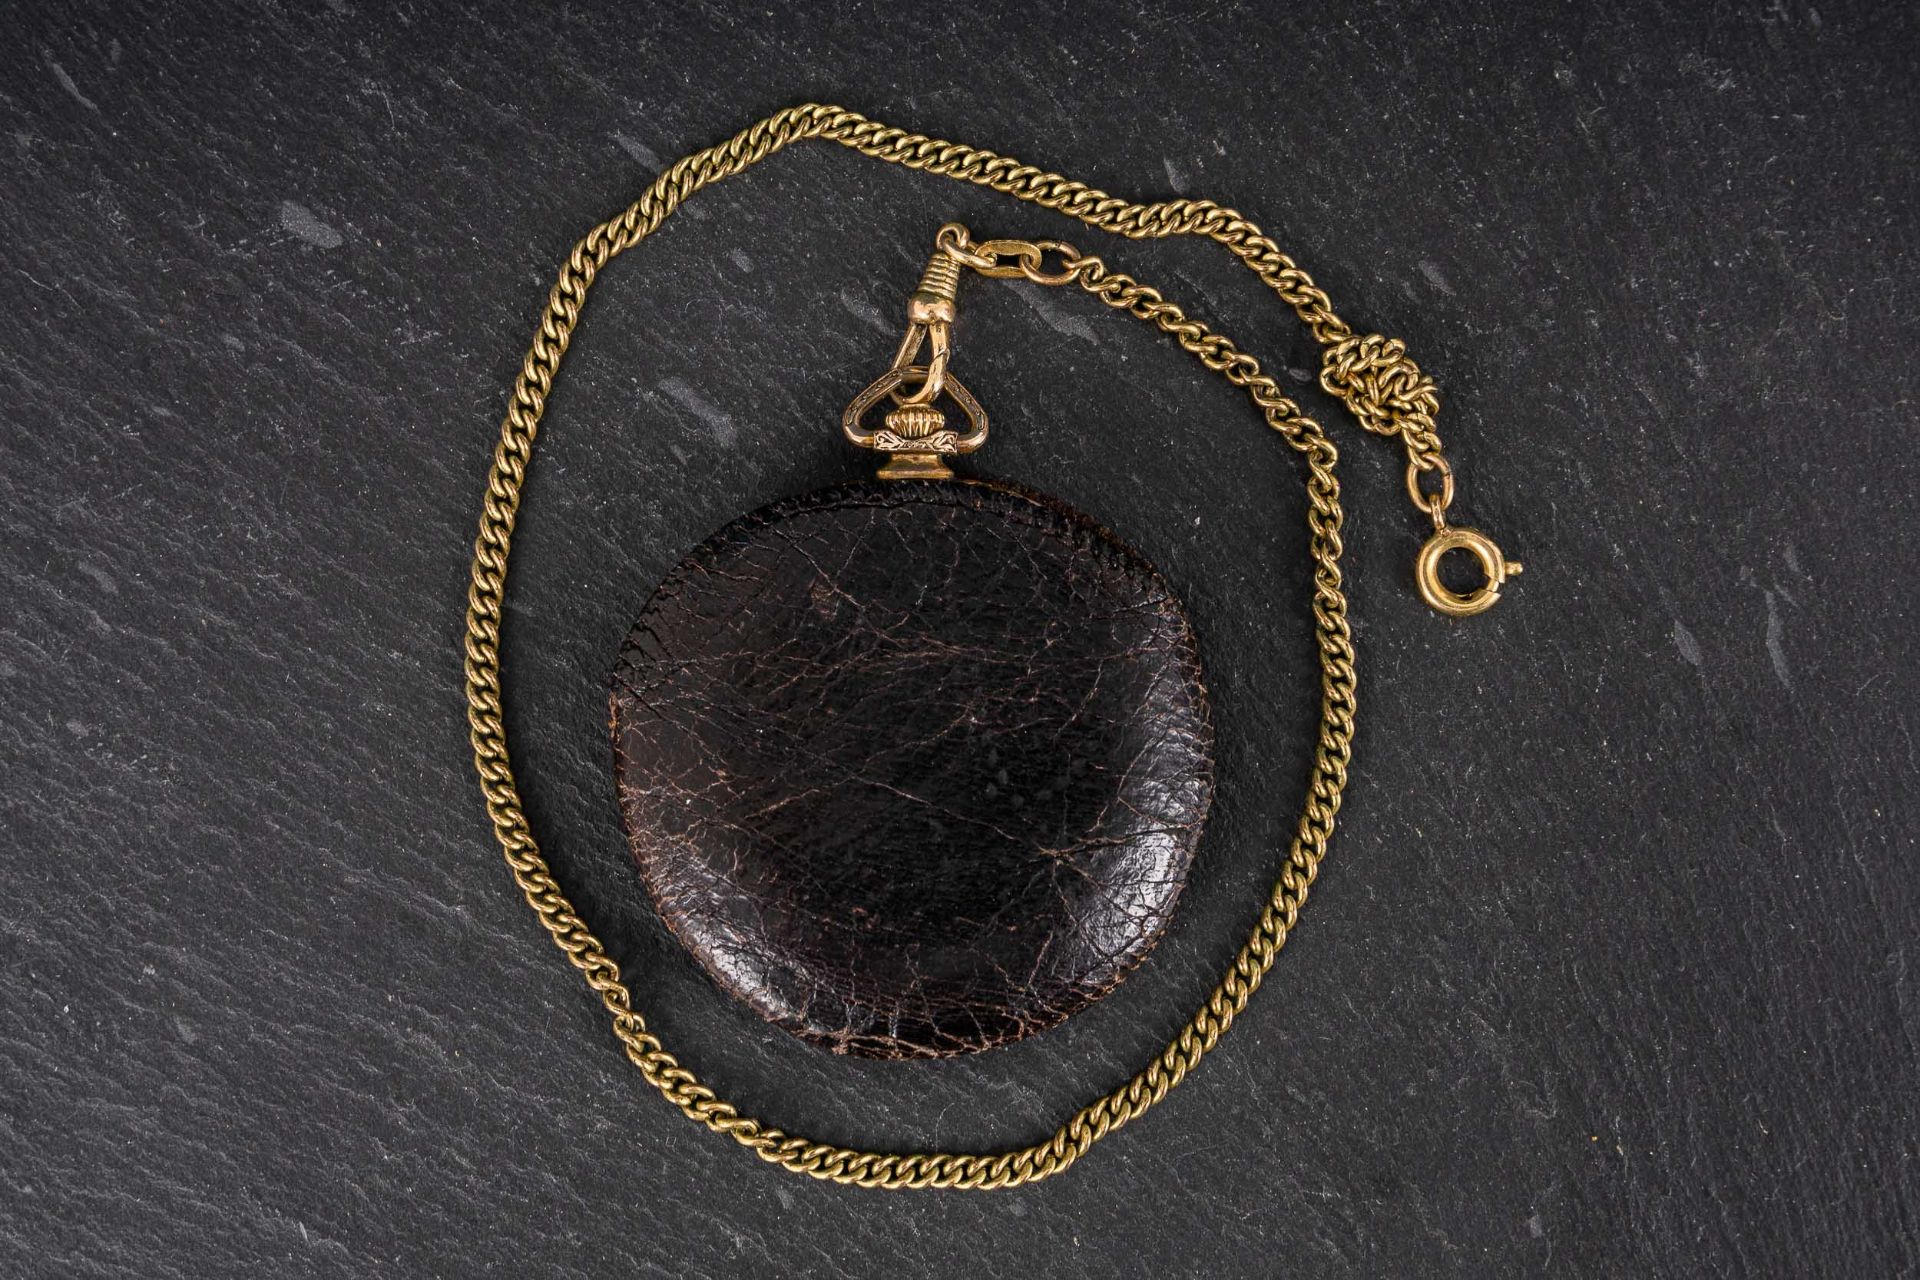 Antike Savonette - Herrentaschenuhr der 1930/ 40er Jahre. Flaches, vergoldetes Gehäuse an vergoldet